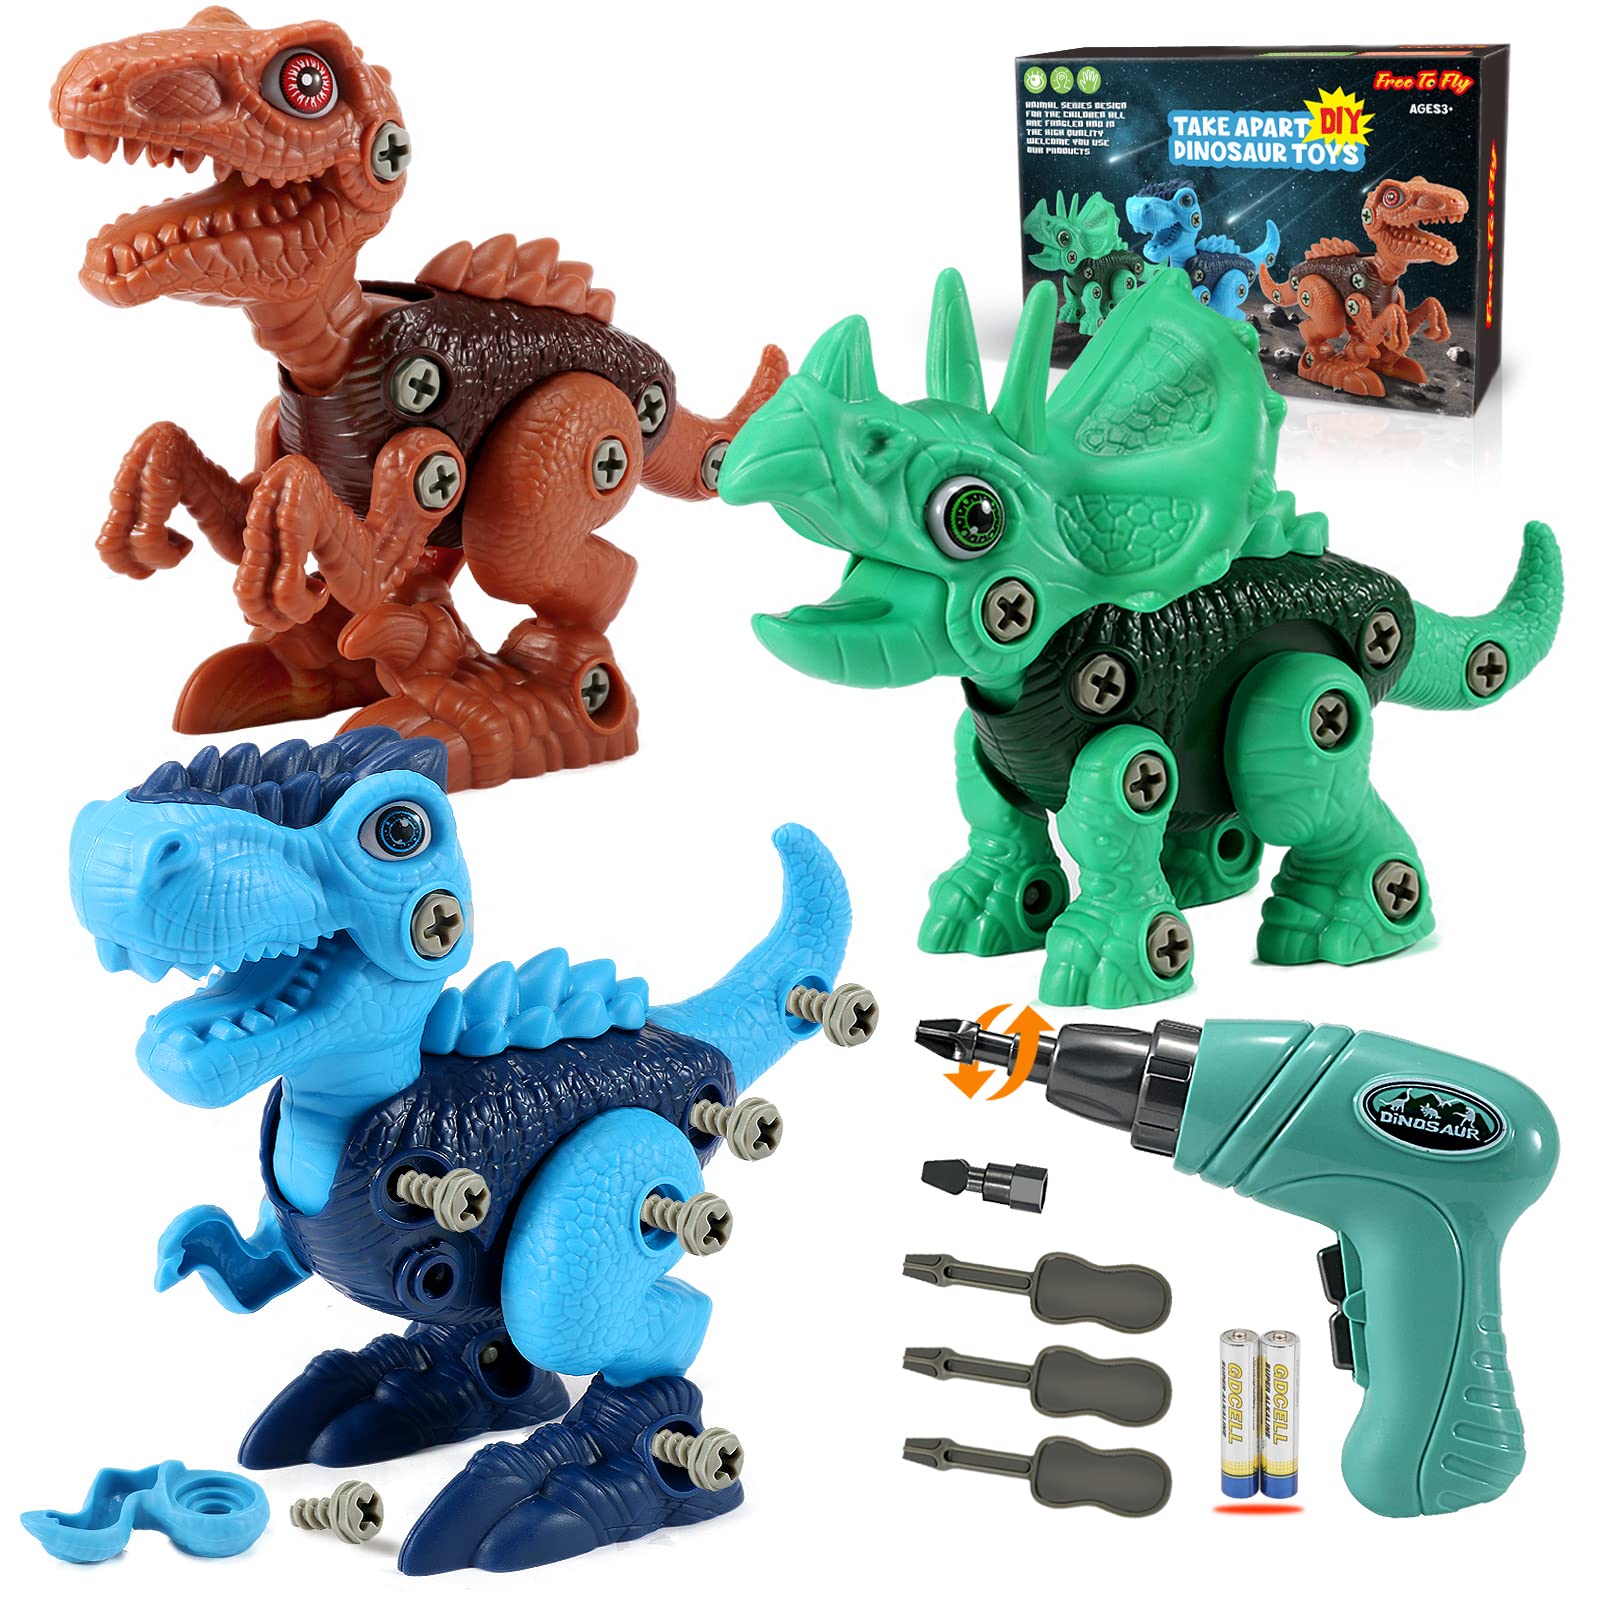 Take-Apart Dinosaur Toys